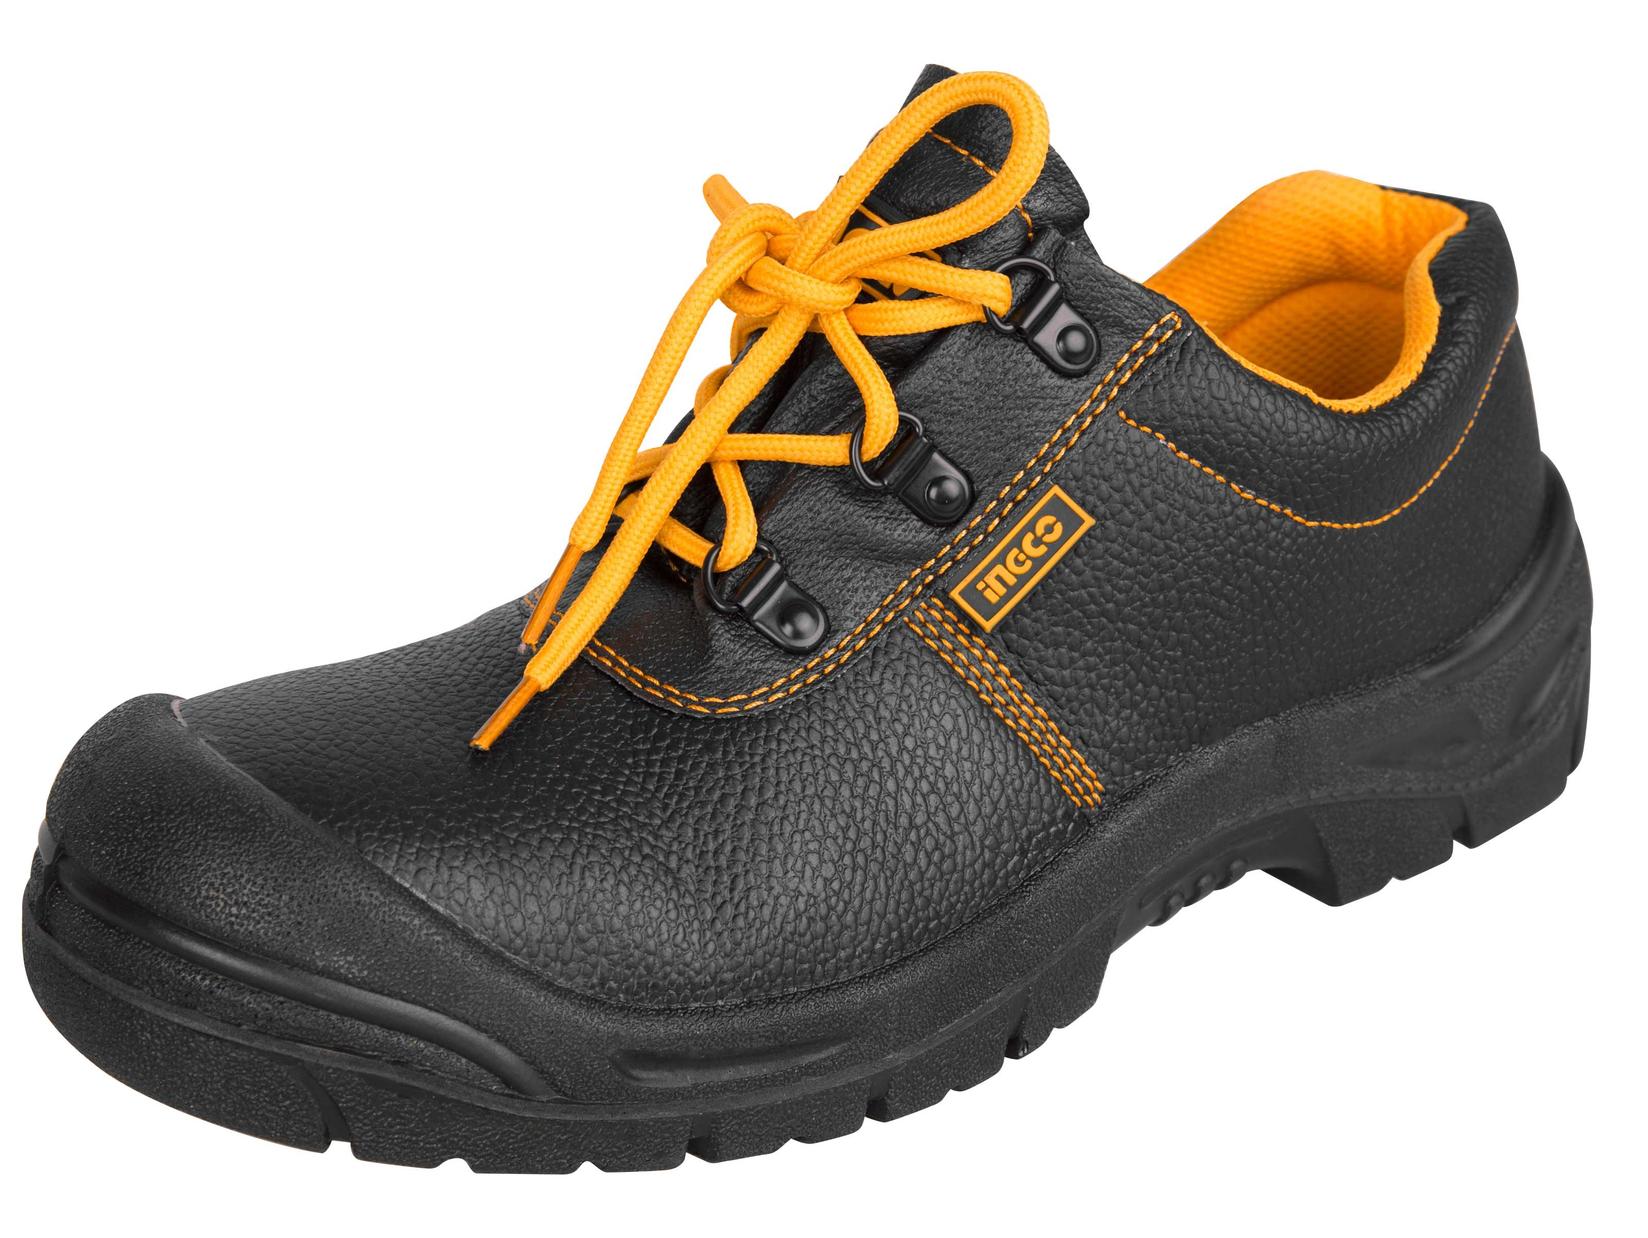 INGCO Zaštitne cipele plitke 39 crne